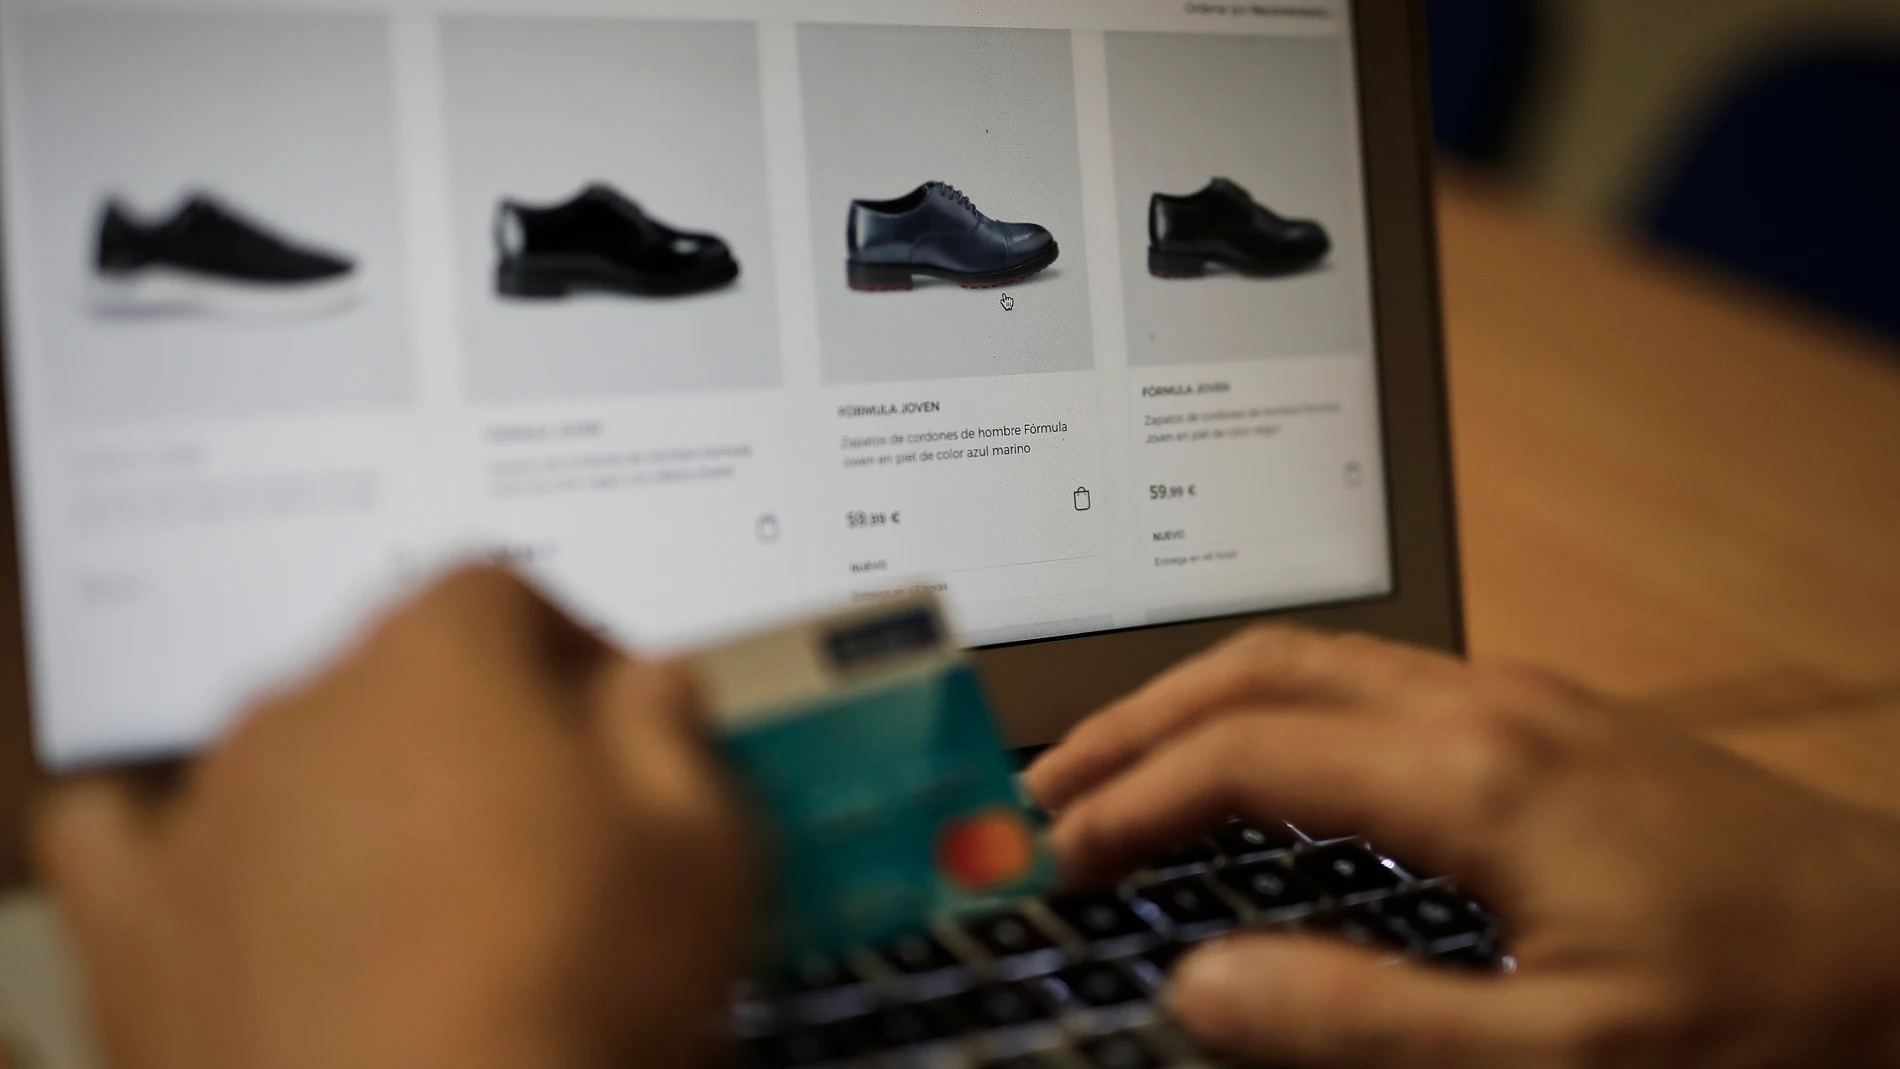 Una persona se dispone a pagar con su tarjeta de crédito una compra online